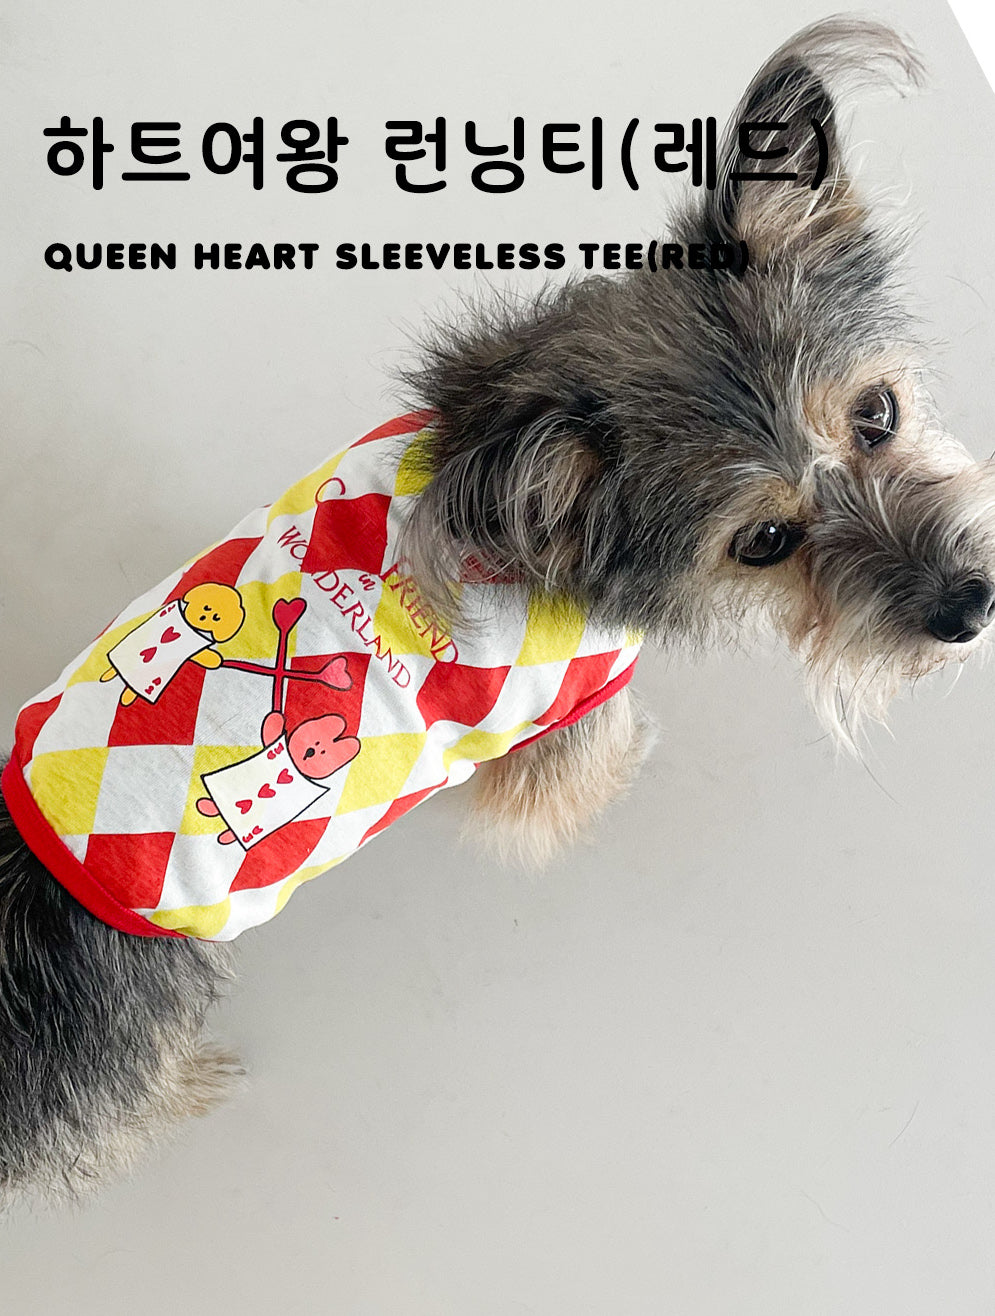 Queen Heart Sleeveless Tee